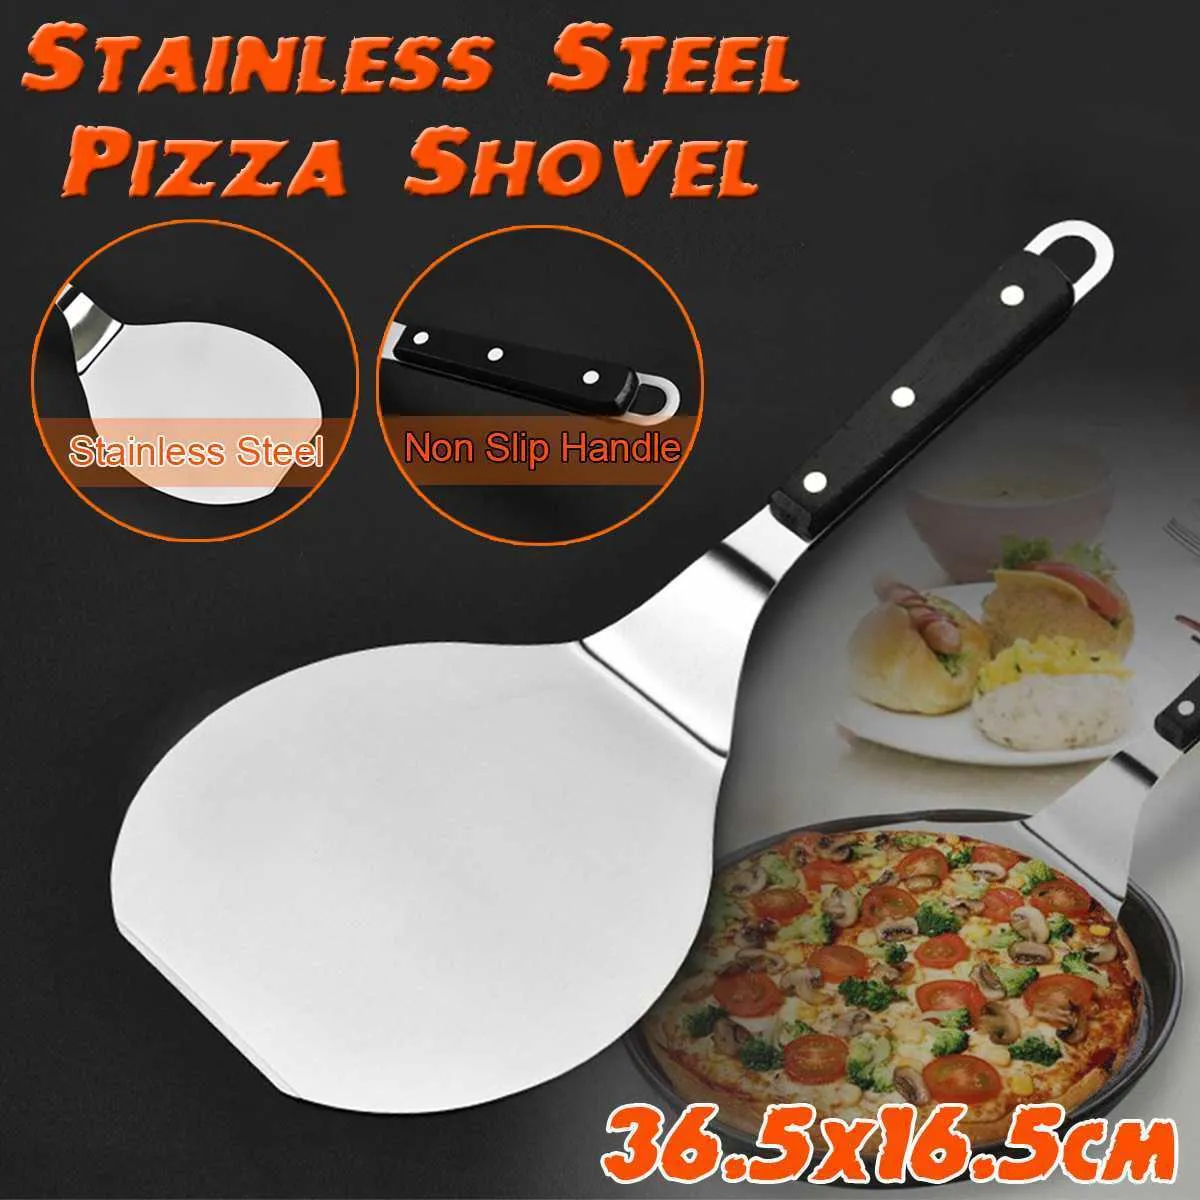 14 "Stal nierdzewna Easy Clean Pizza Shovel Smażenie Narzędzia Podnośnikowe Naleśniki Blinka Spatula Paddle Kitchen Buczenie Non-Stick 201023